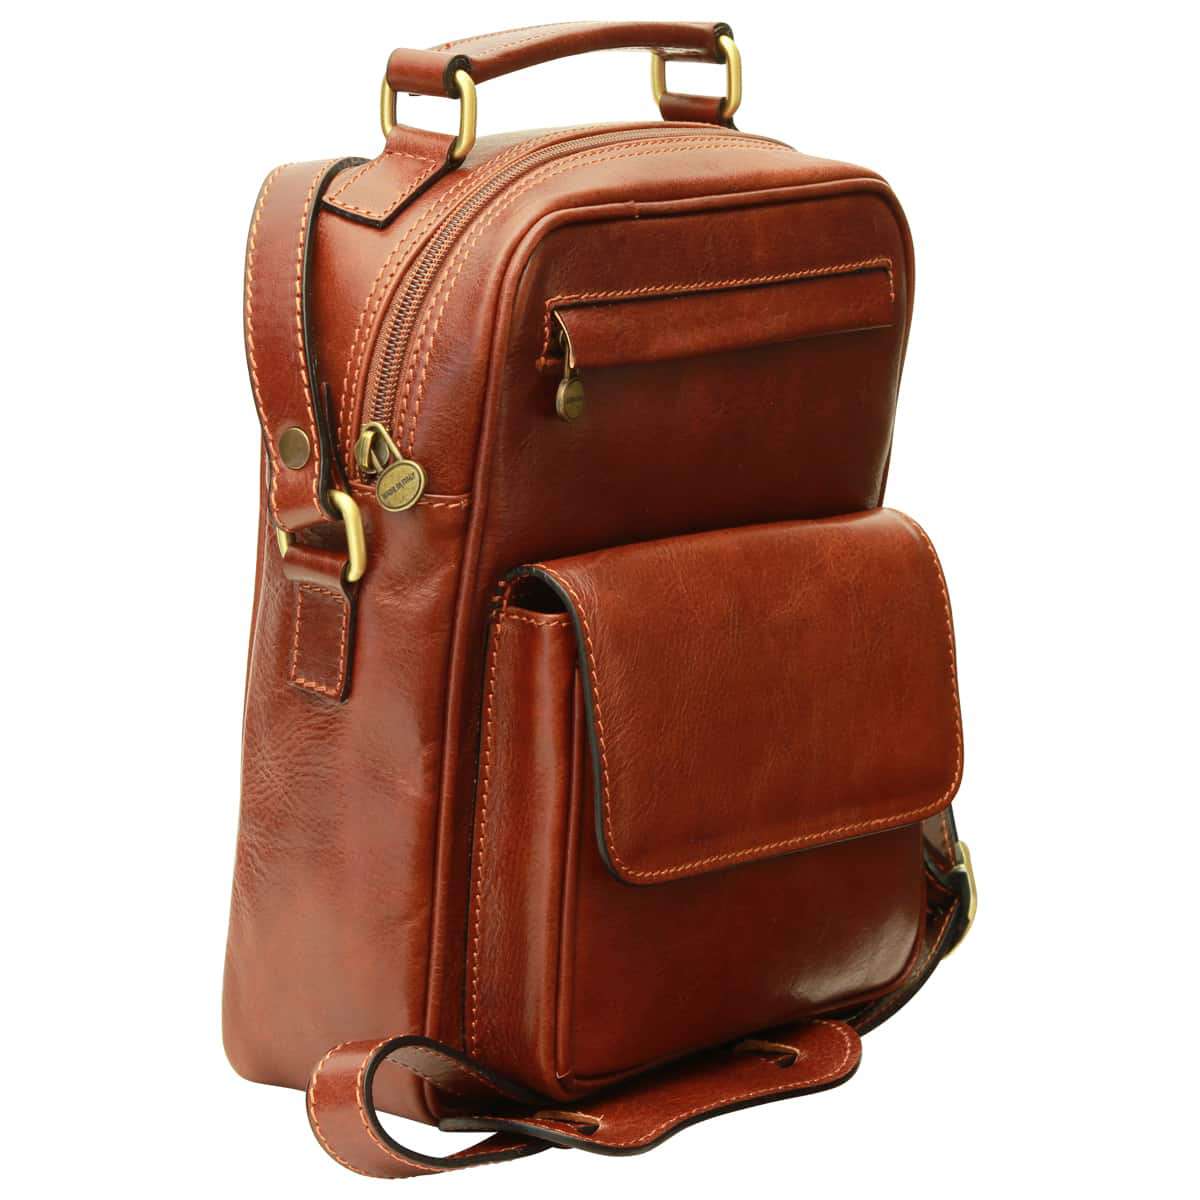 Leather Shoulder Bag with front pocket - Brown | 056405MA | EURO | Old Angler Firenze